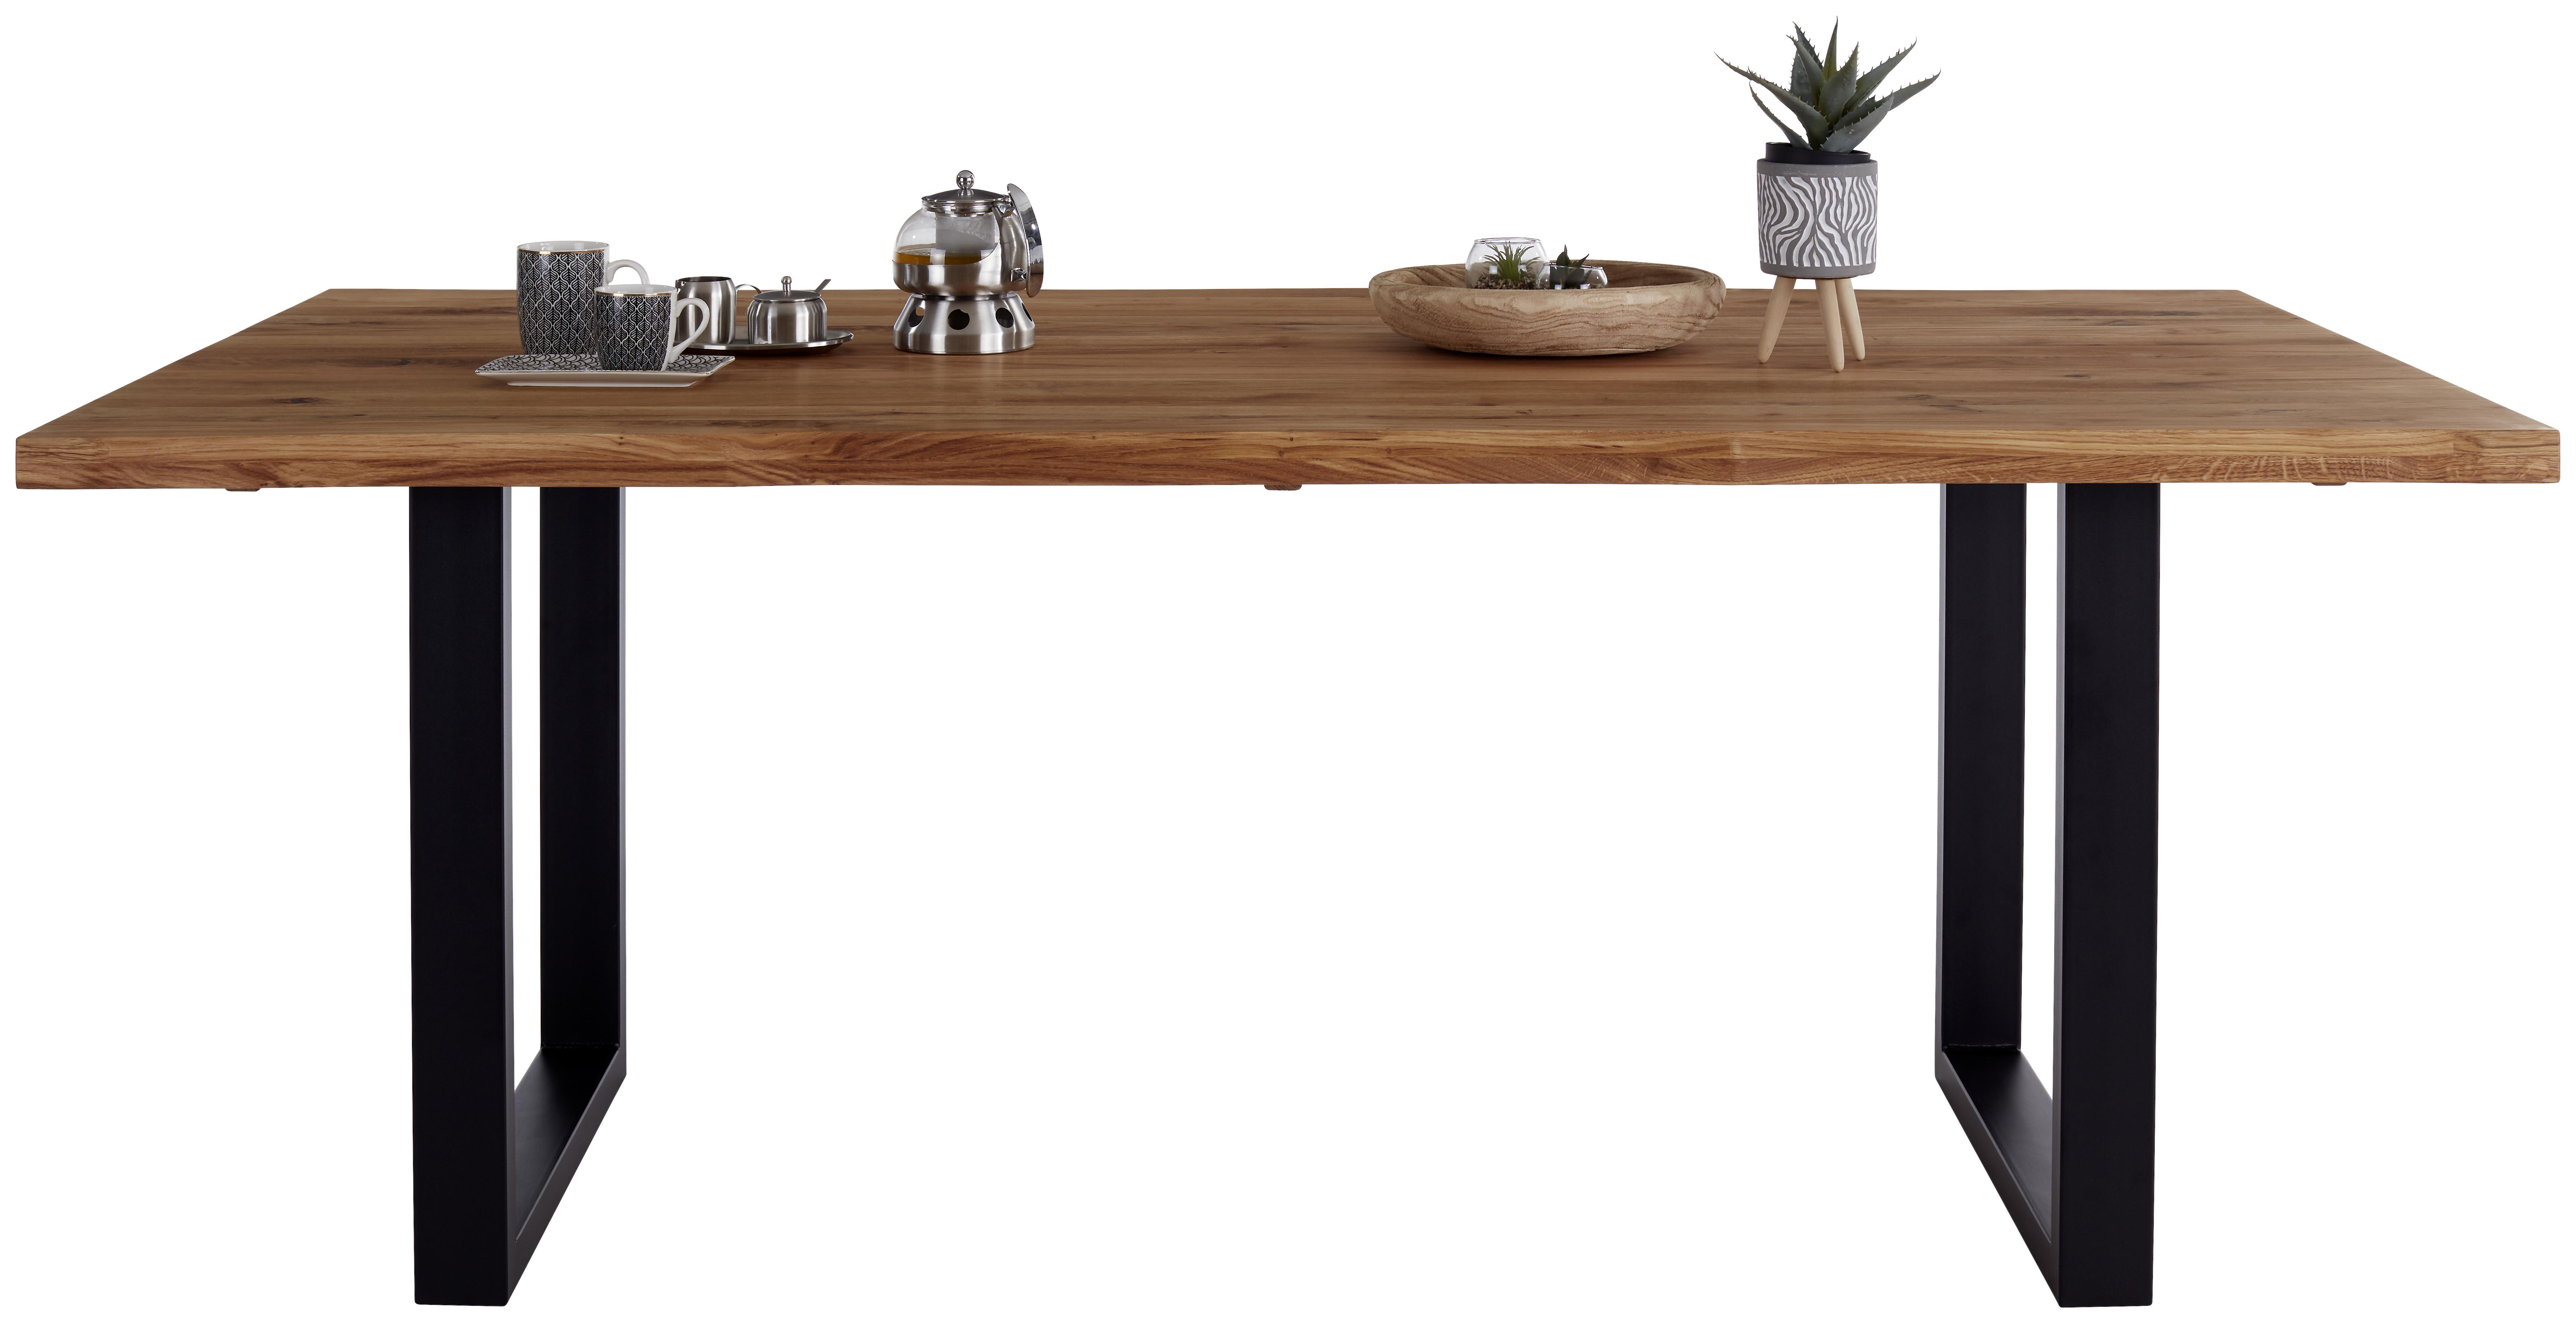 Jídelní Stůl Rockford 200 - černá/barvy dubu, Moderní, kov/dřevo (200/77/100cm)